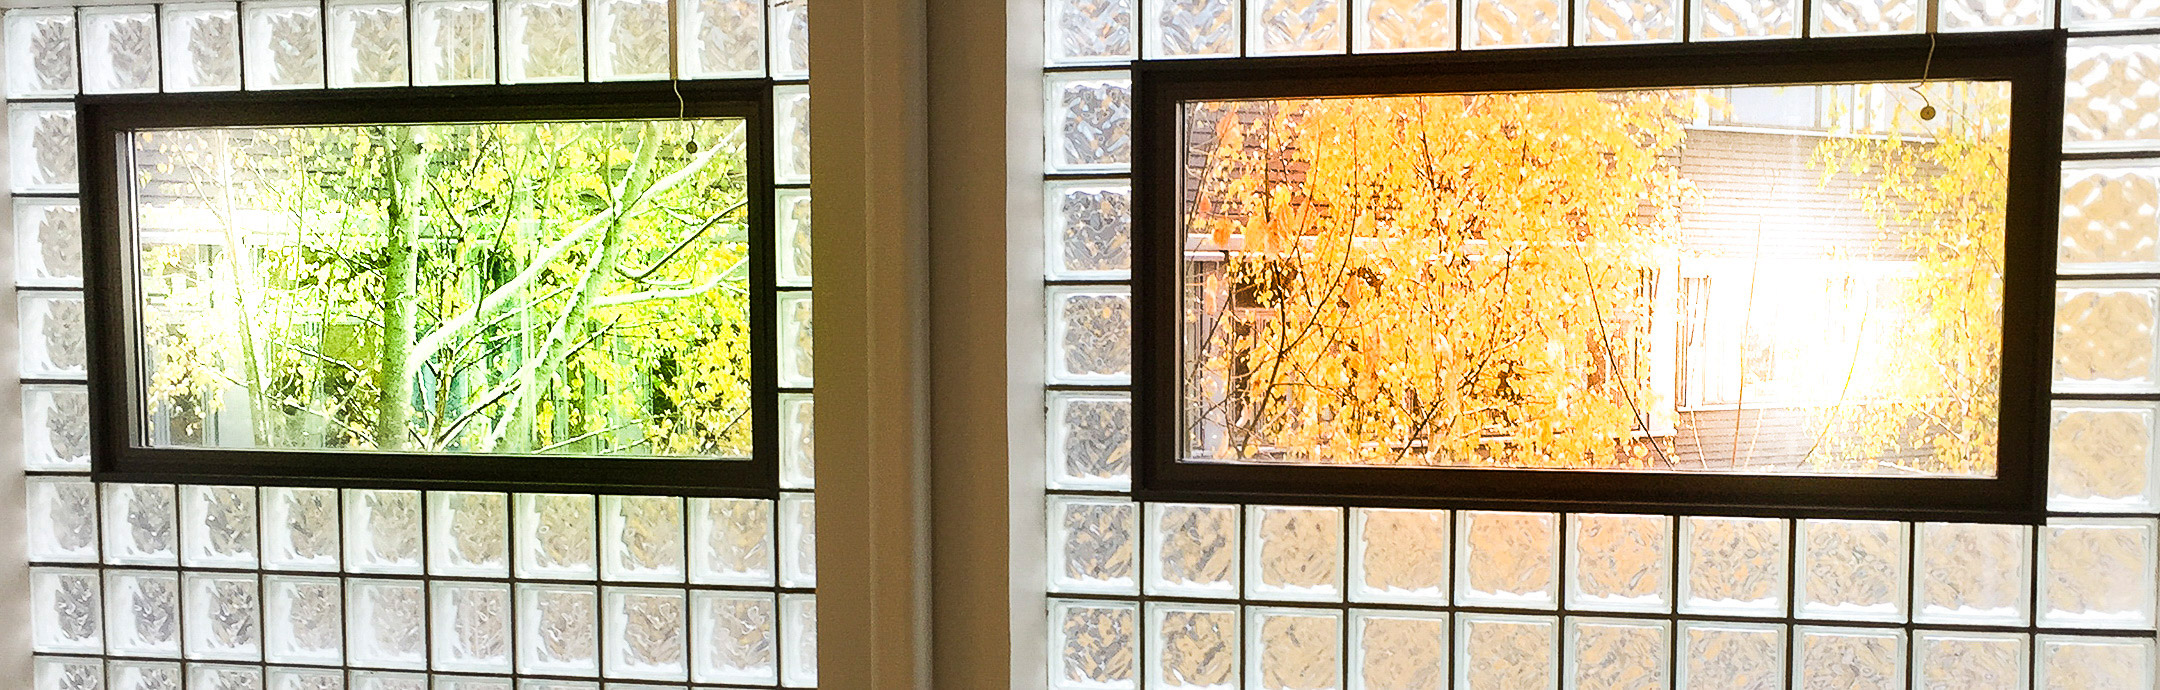 Två fönster i glasvägg med träd utanför i olikafärger.